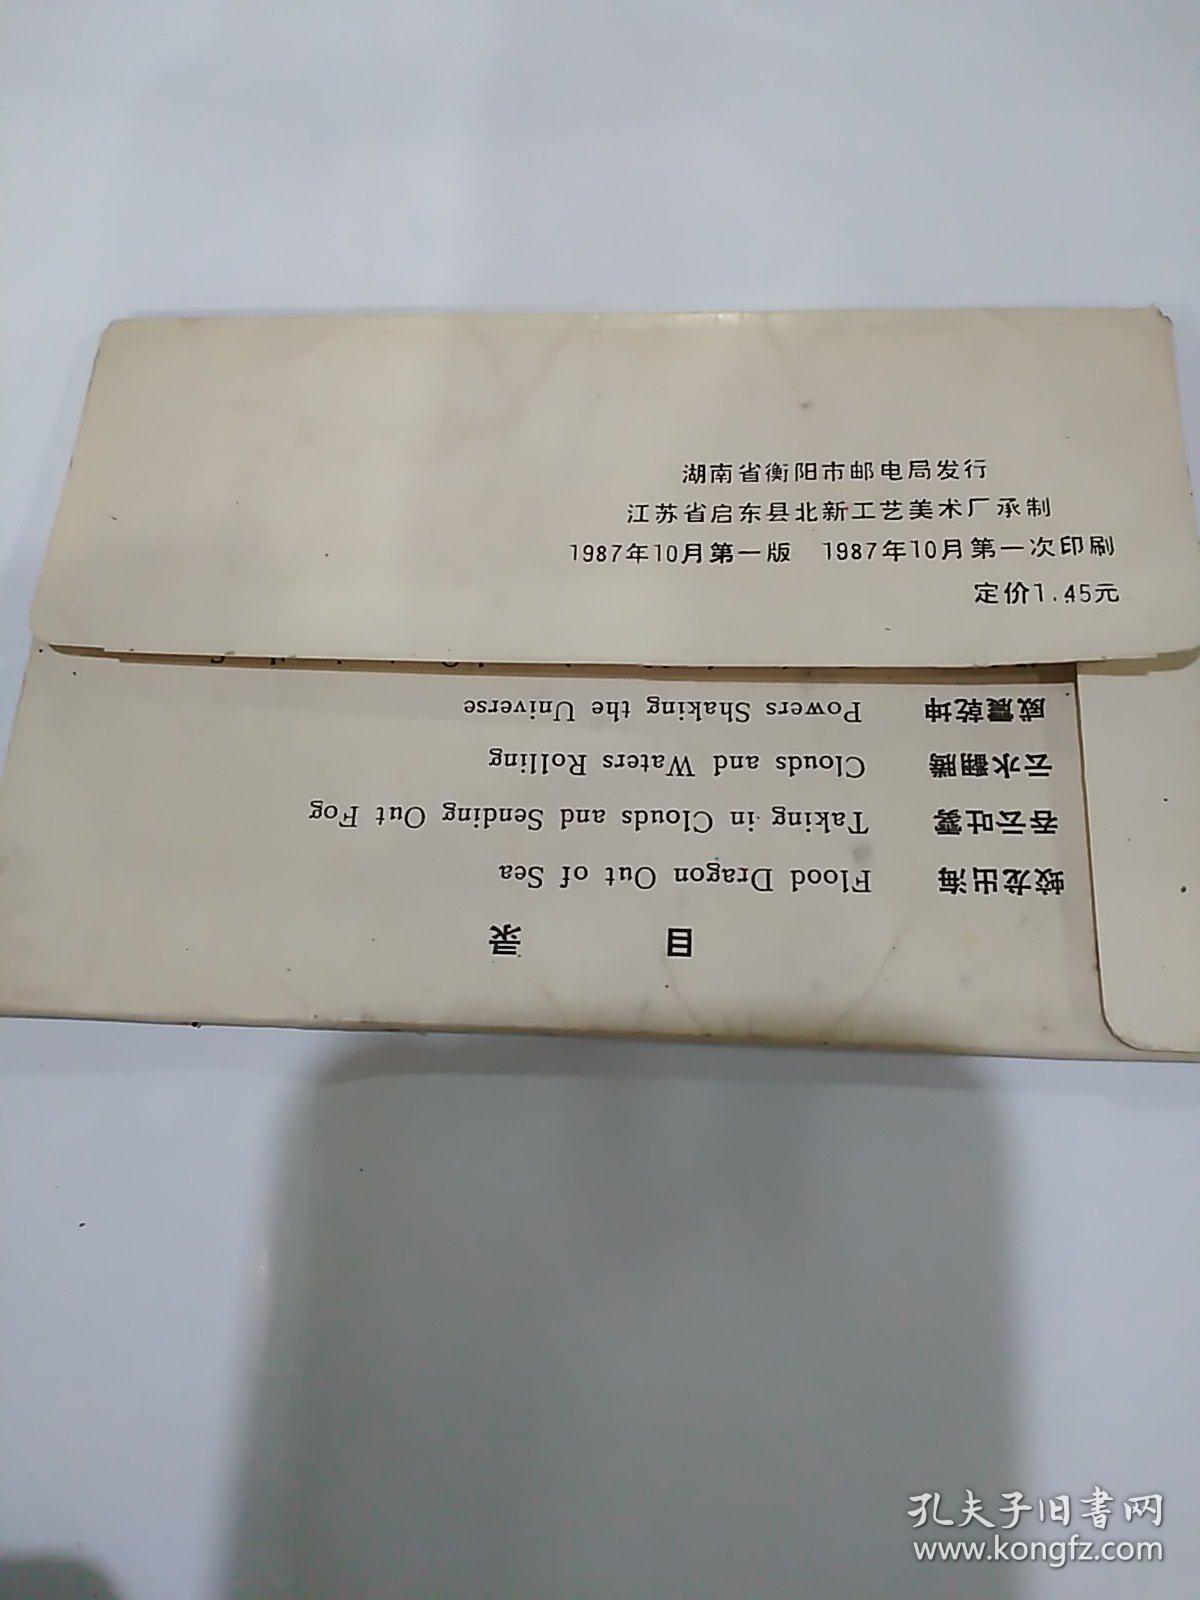 明信片/老画片--- 龙图献瑞 (10枚)湖南省衡阳市邮电局发行,1987年一版一印